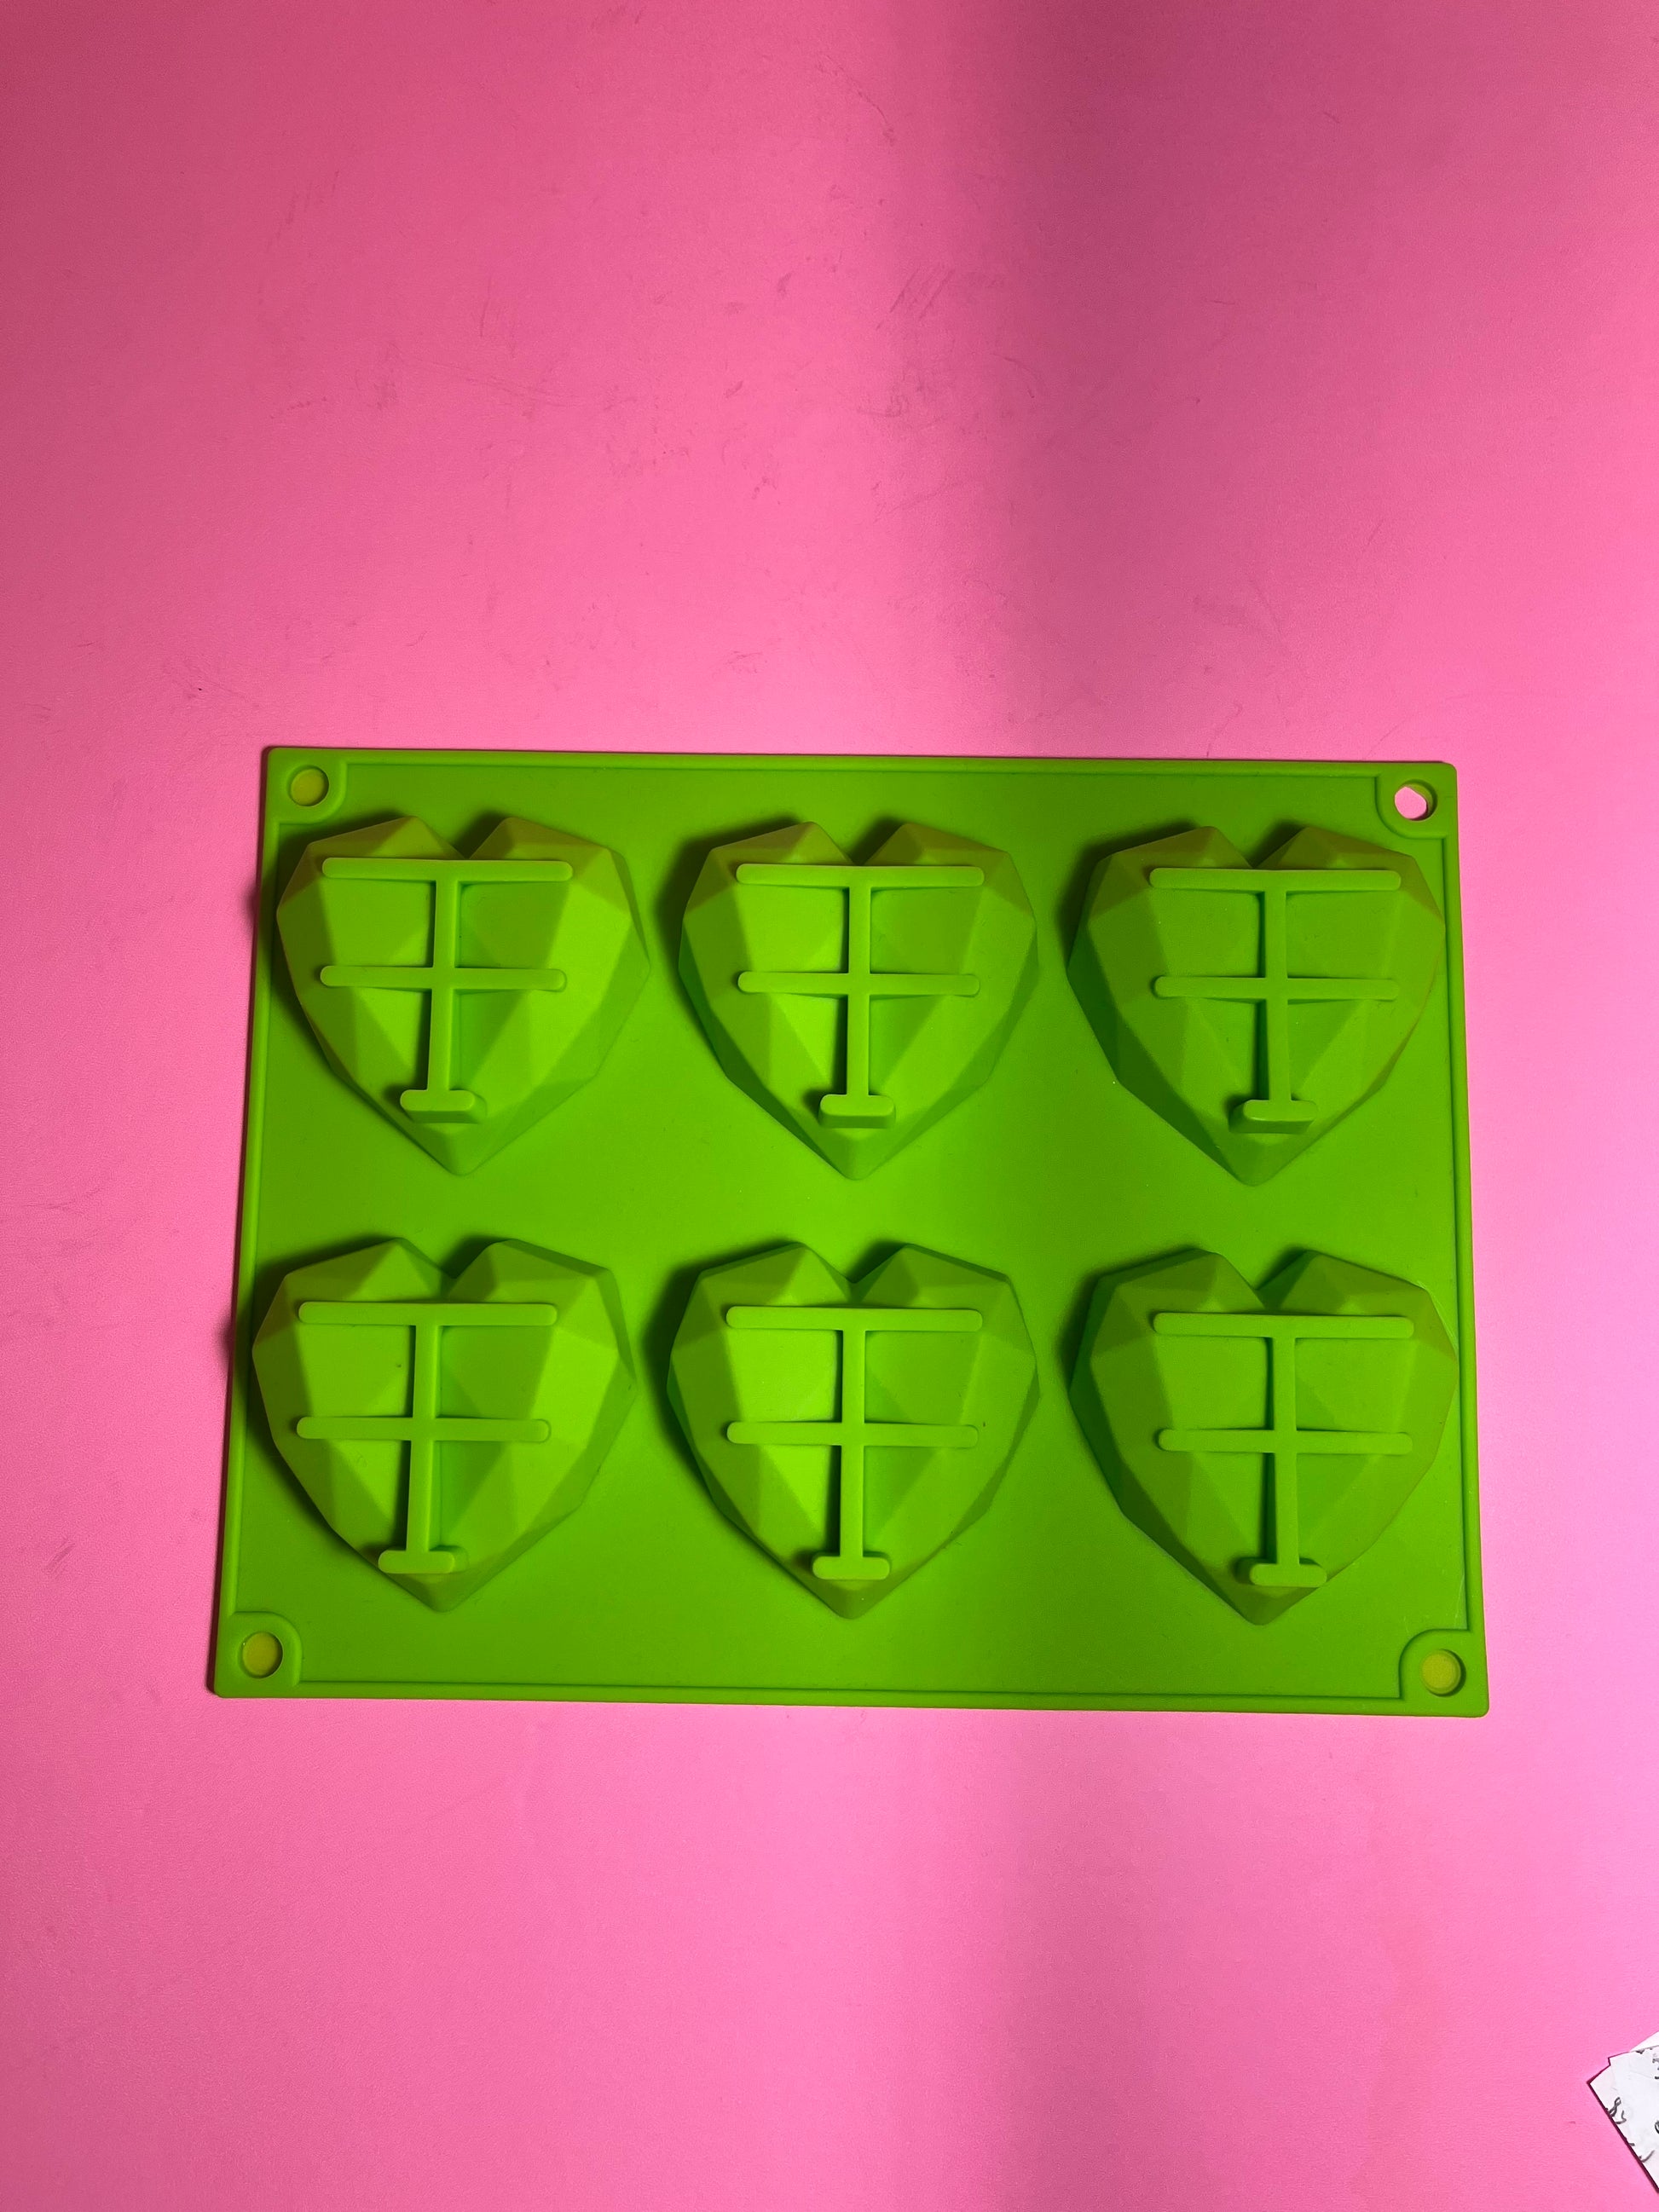 Wilton Mini Hearts Silicone Mold, 12-Cavity - Heart Shaped Mold